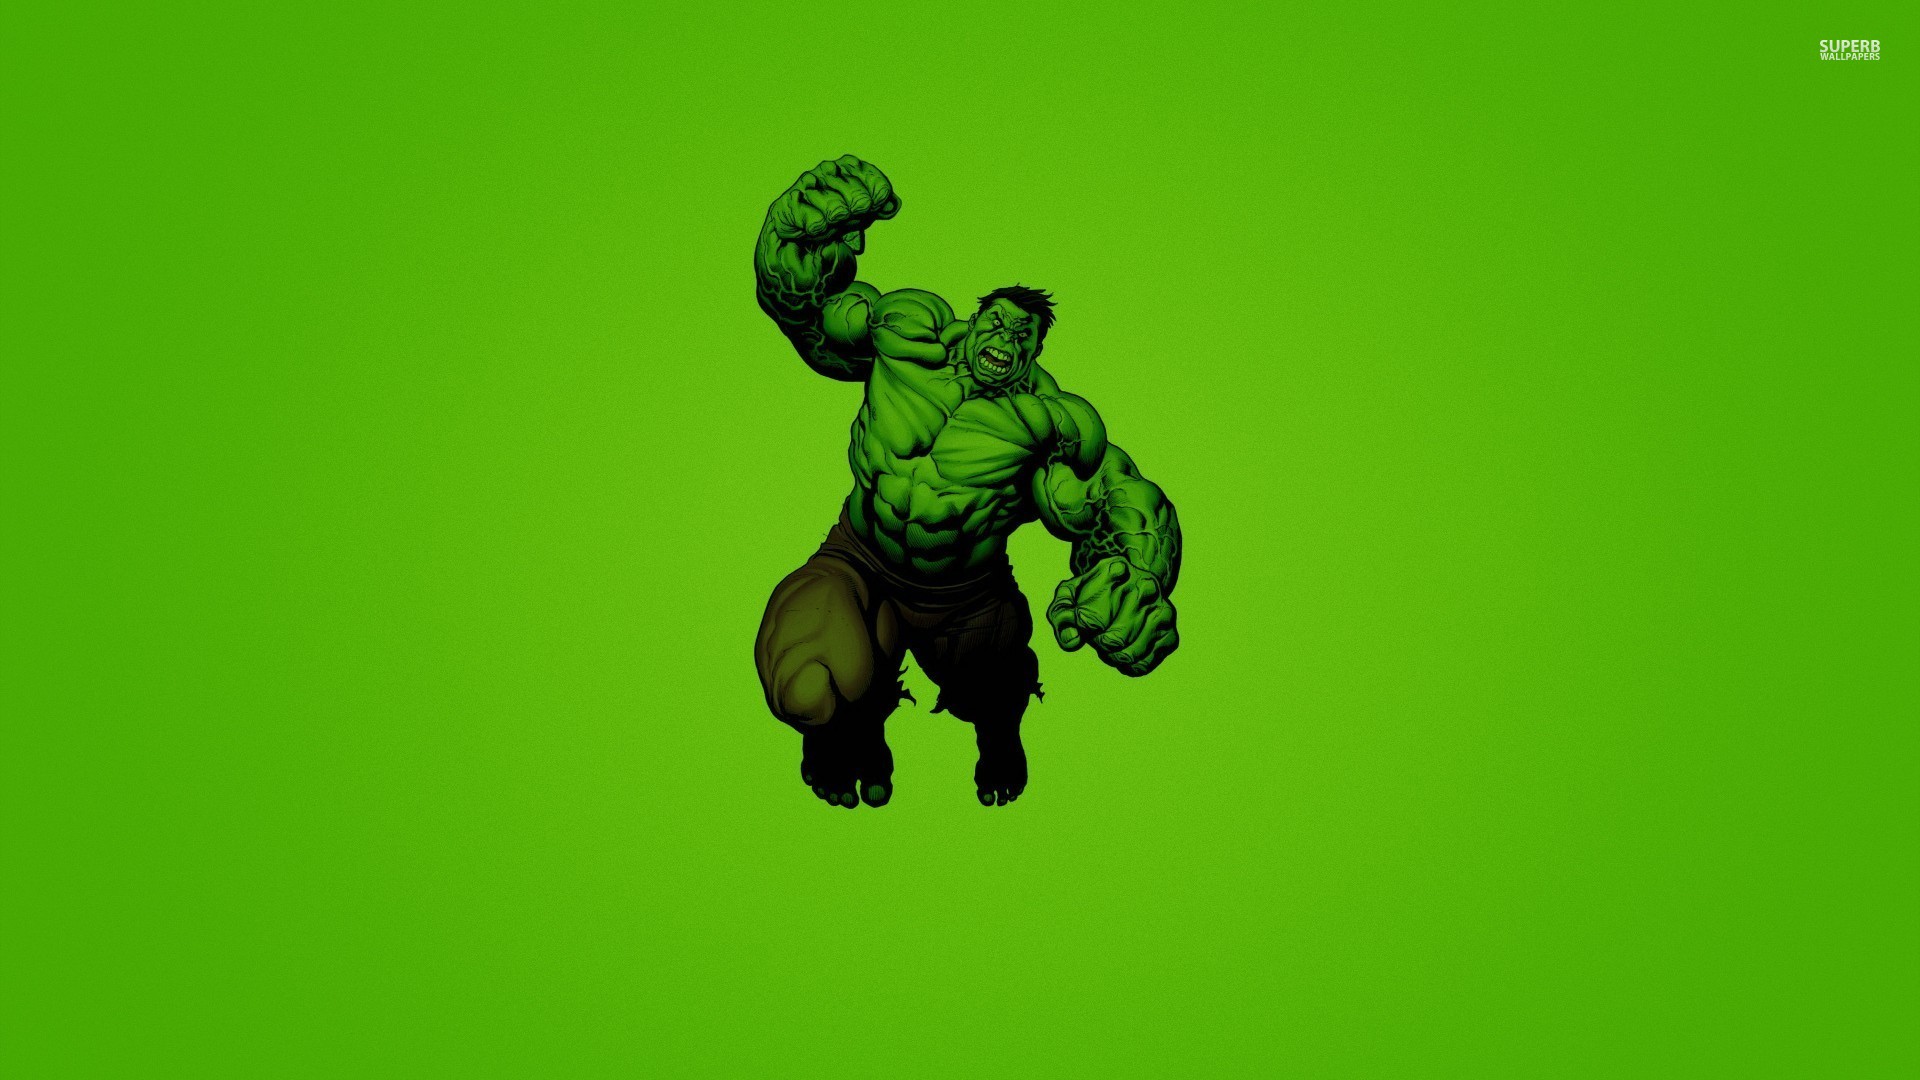 Hulk Image On The Digitalimagemakerworld Chargeless